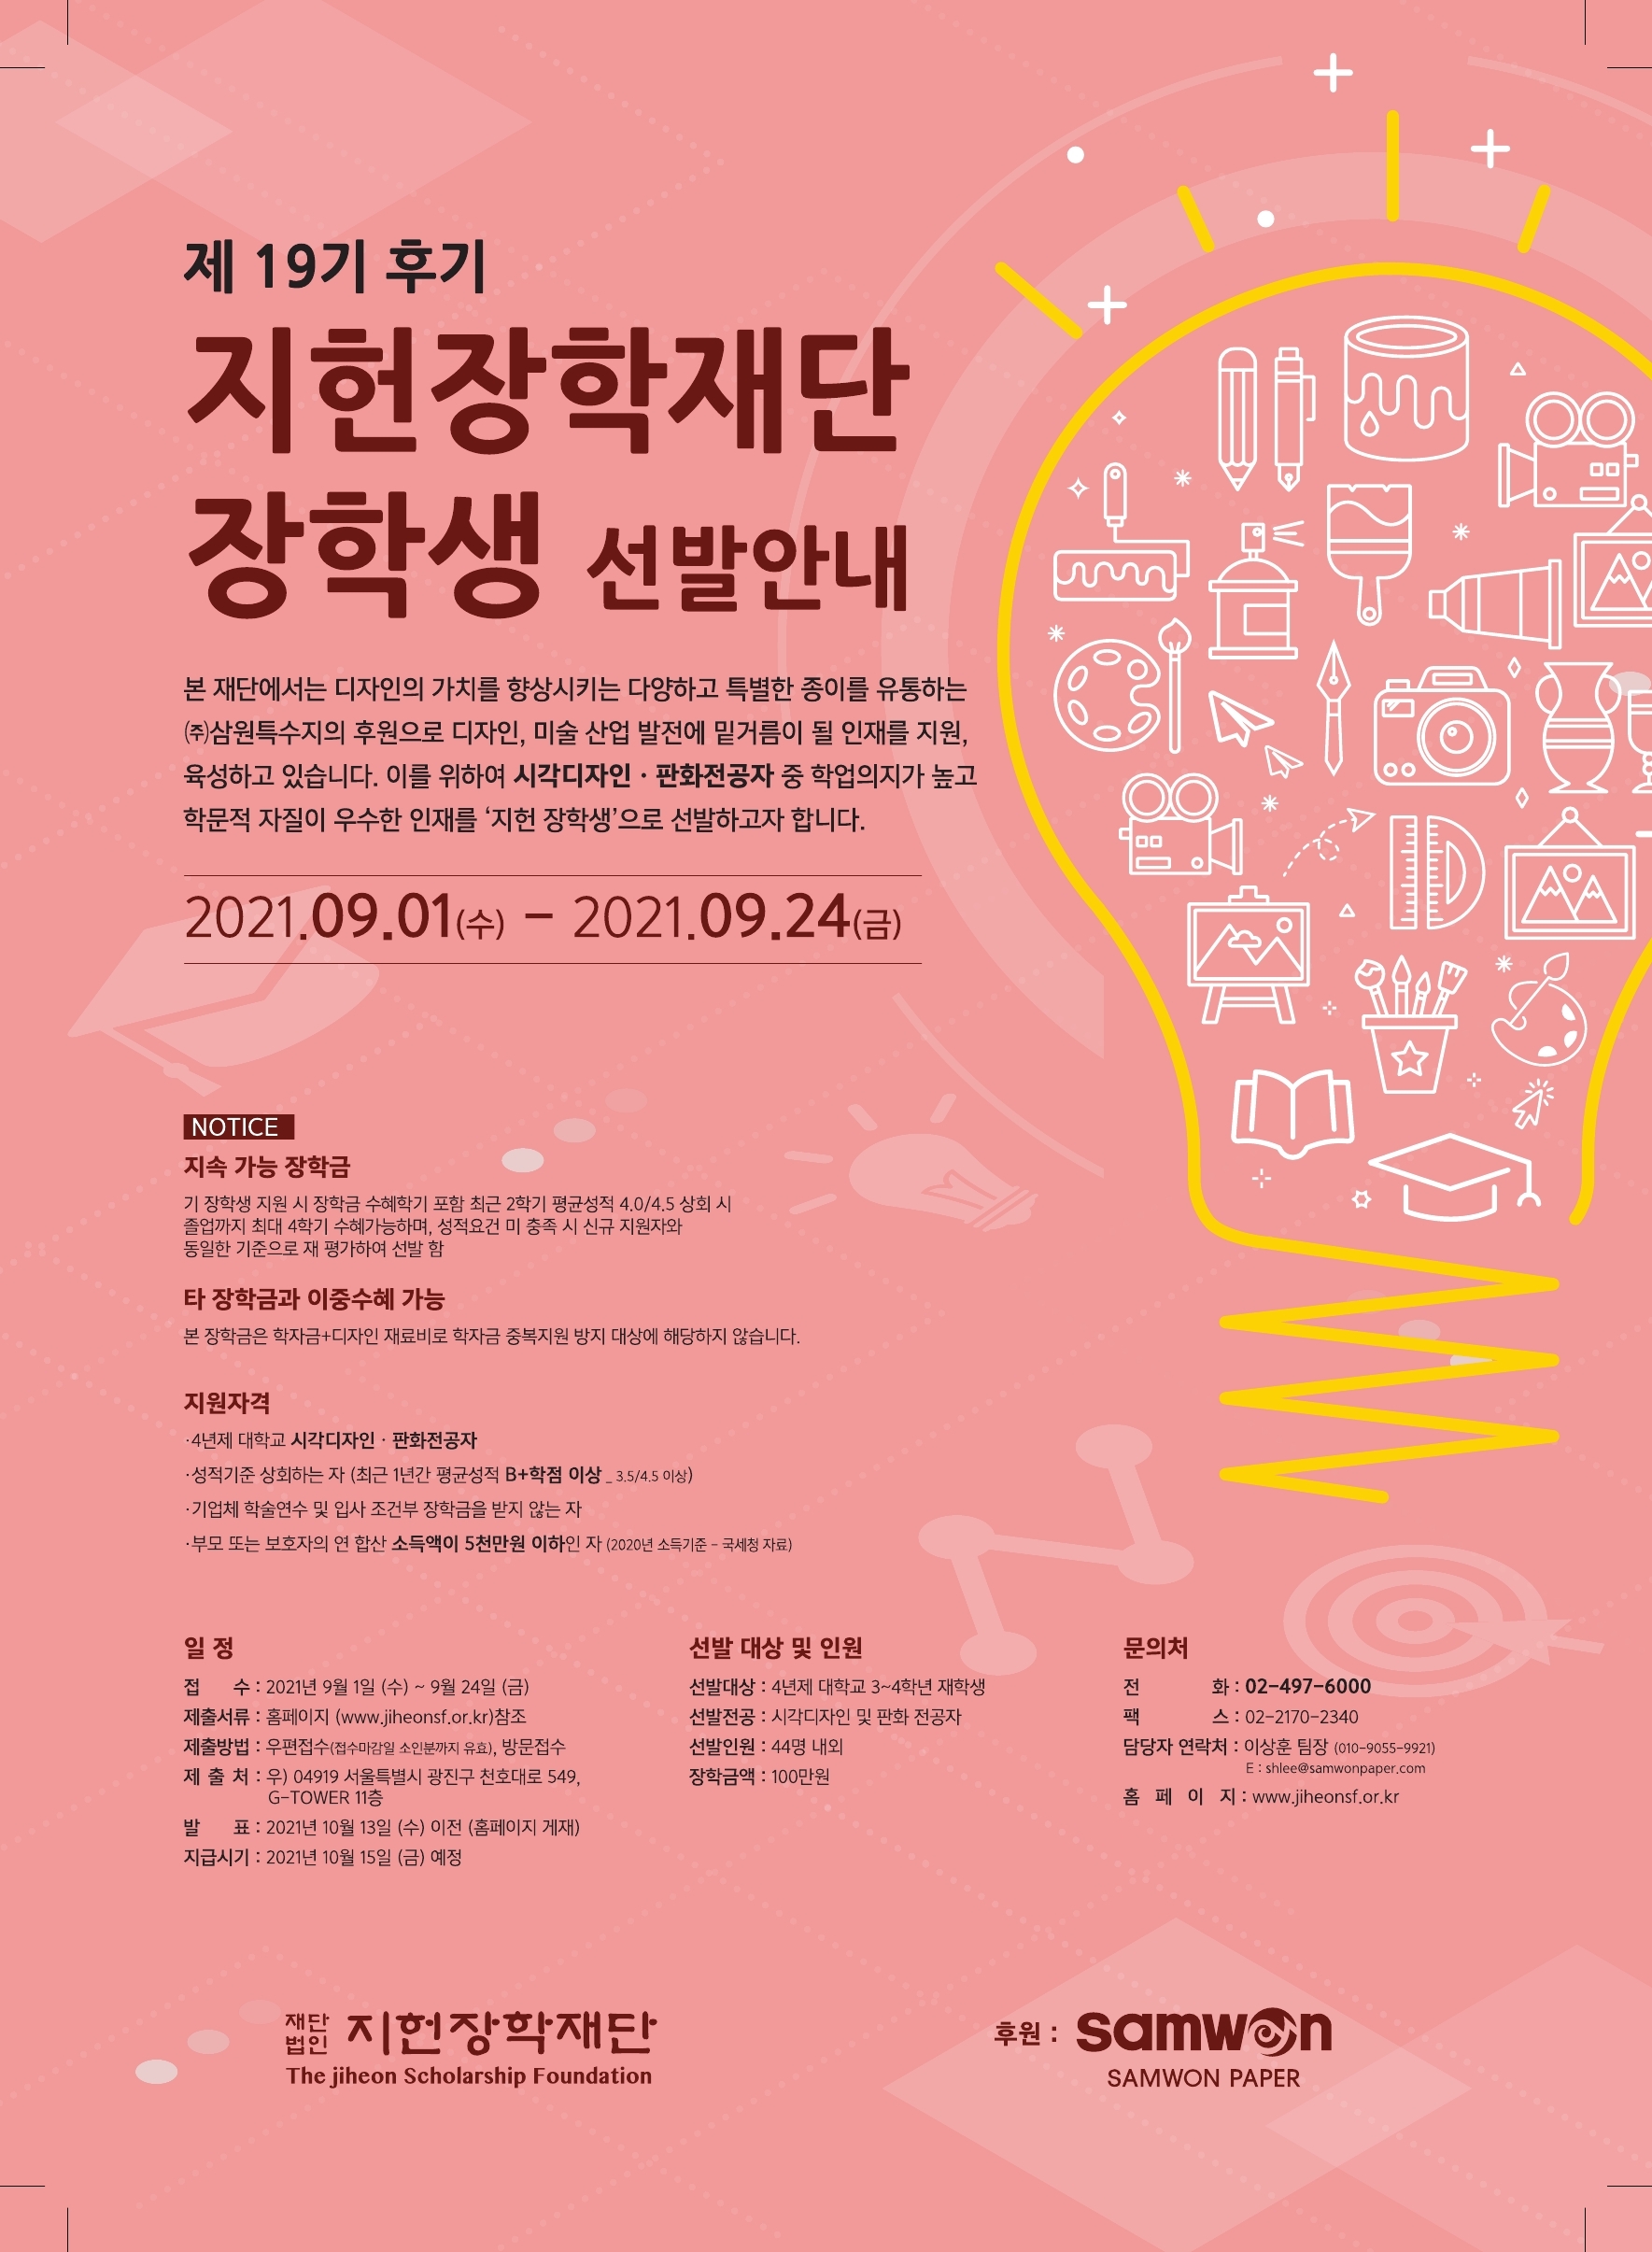 2021-2 지헌장학재단 장학금 신청안내(시각디자인)